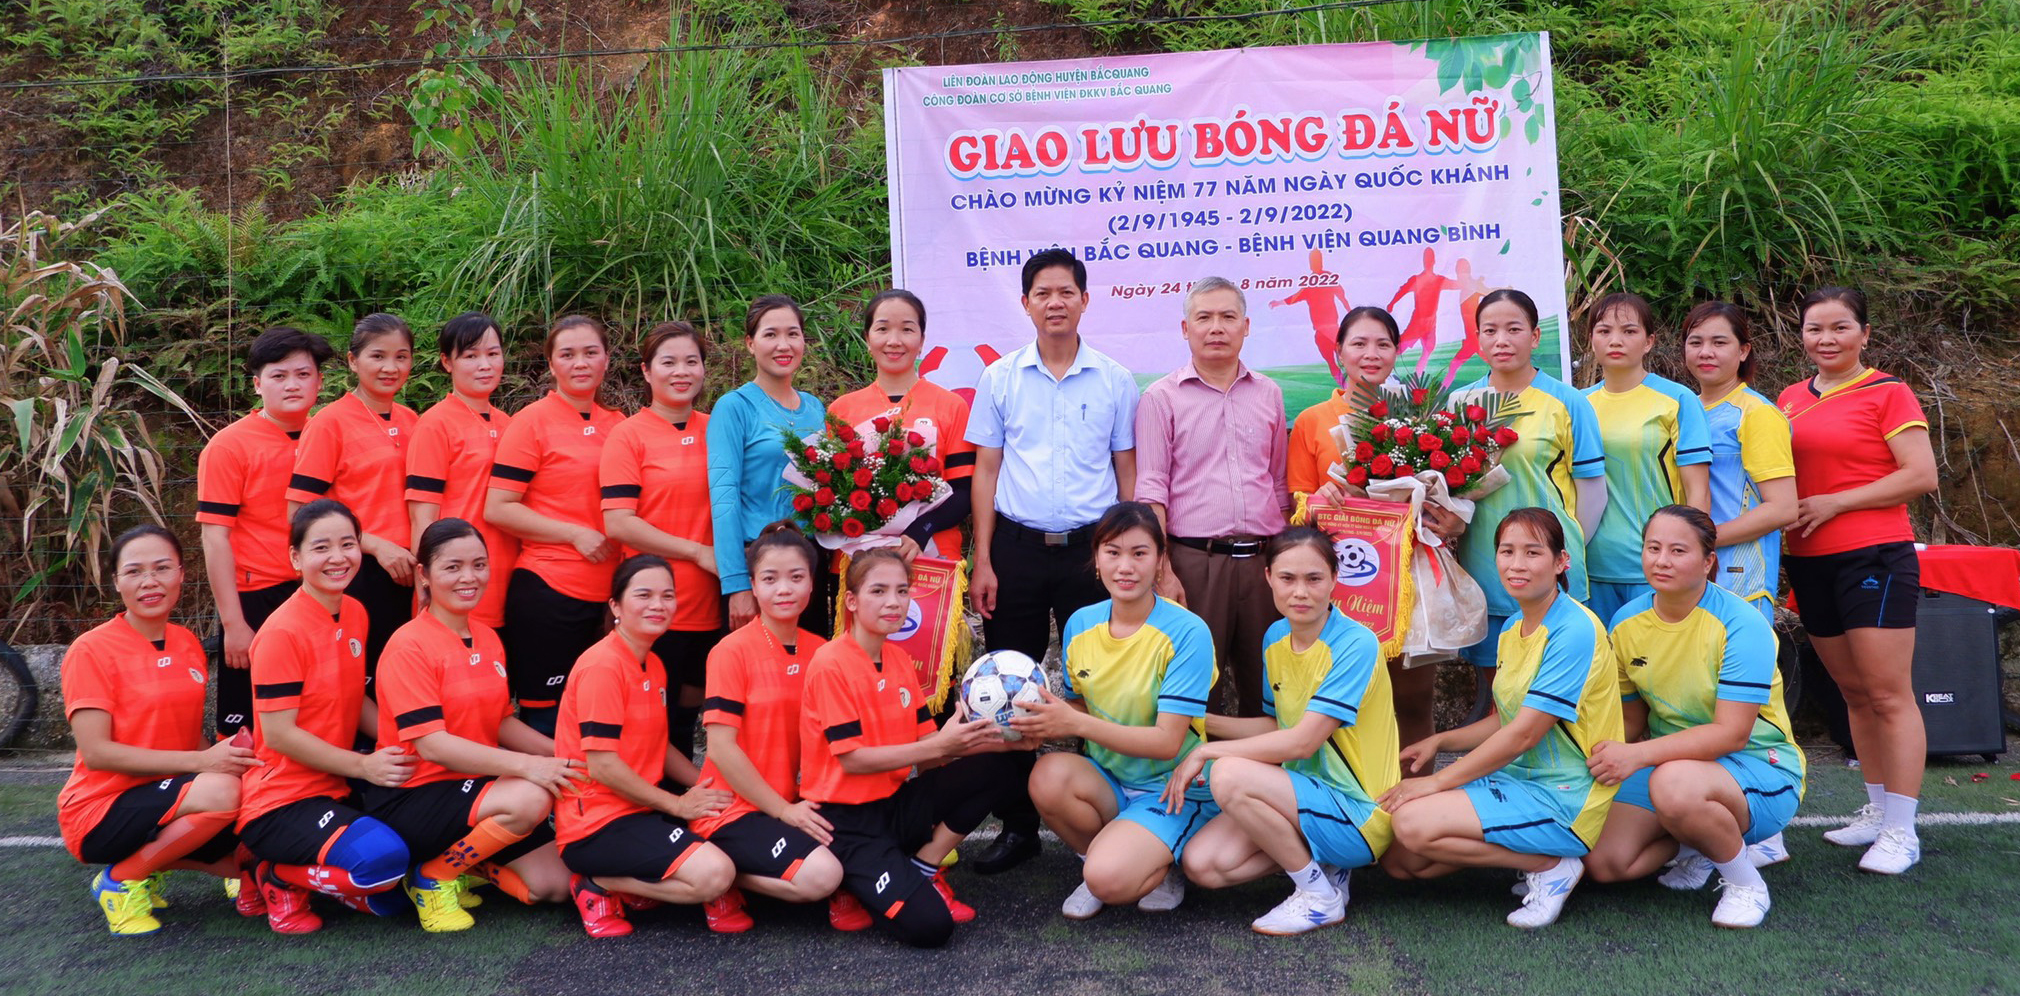 Công đoàn cơ sở Bệnh viện ĐKKV Bắc Quang giao hữu bóng đá  kỷ niệm 77 năm ngày Quốc Khách 2/9/1945 – 2/9/2022